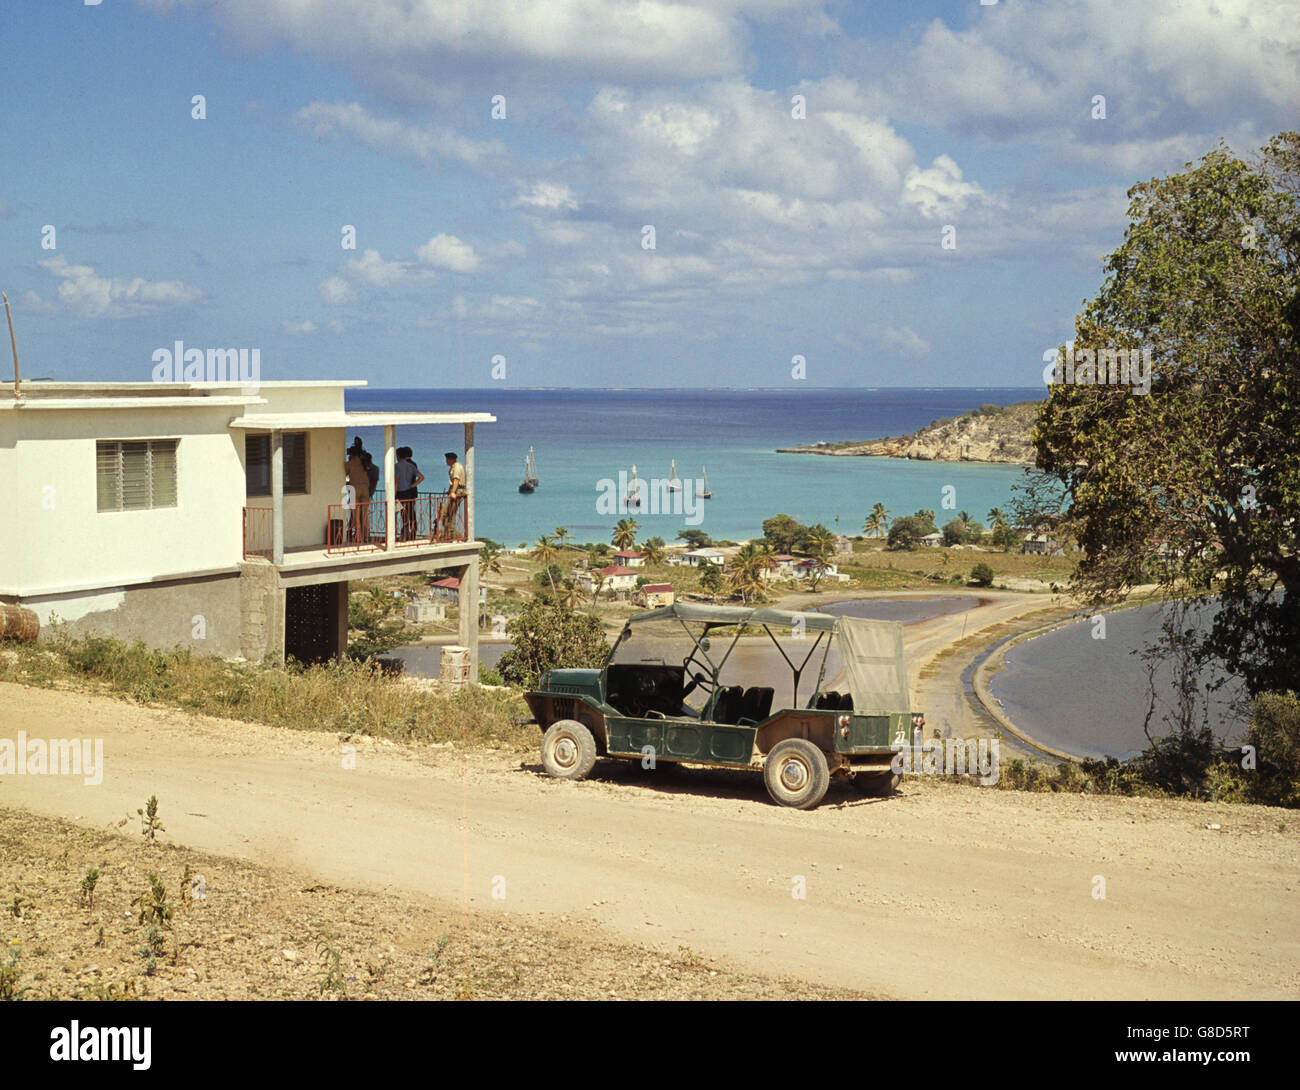 Anguilla ressemble à une station de vacances qu'une île troublée dans cette vue d'une baie parsemée de yachts. Les troupes britanniques, ainsi que le policier britannique, ont été envoyés sur l'île à la suite de troubles politiques. L'île était en appel d'offres pour l'indépendance de la Grande-Bretagne. Banque D'Images